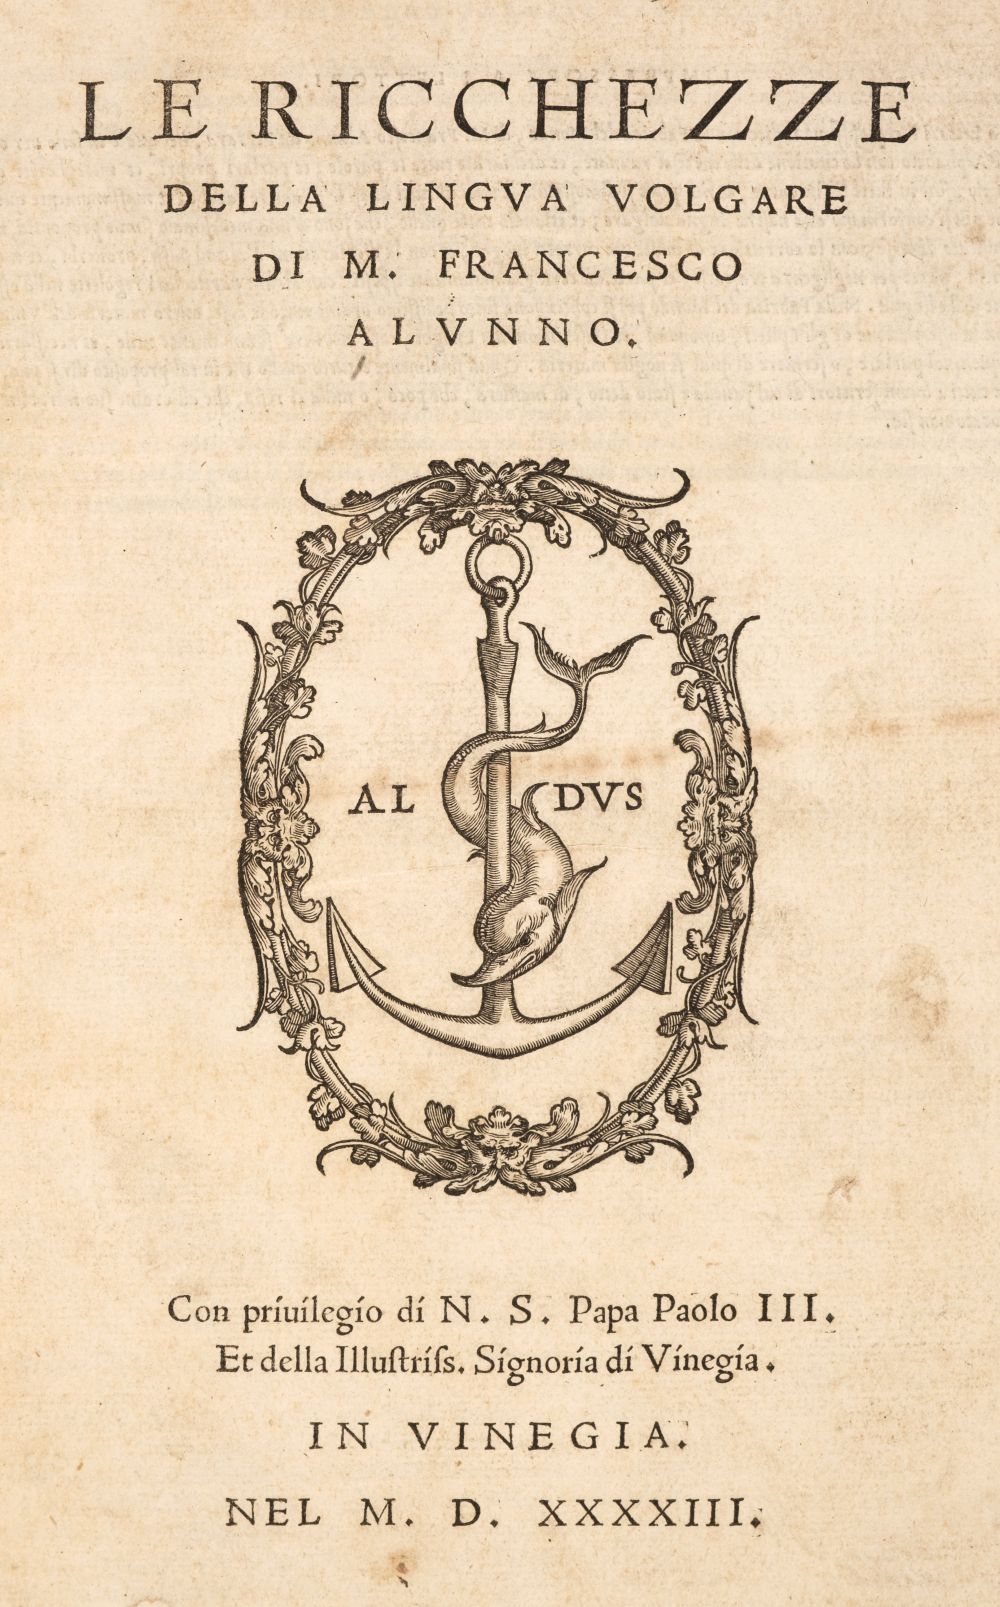 Alunno (Francesco). Le ricchezze della lingua volgare, 1543